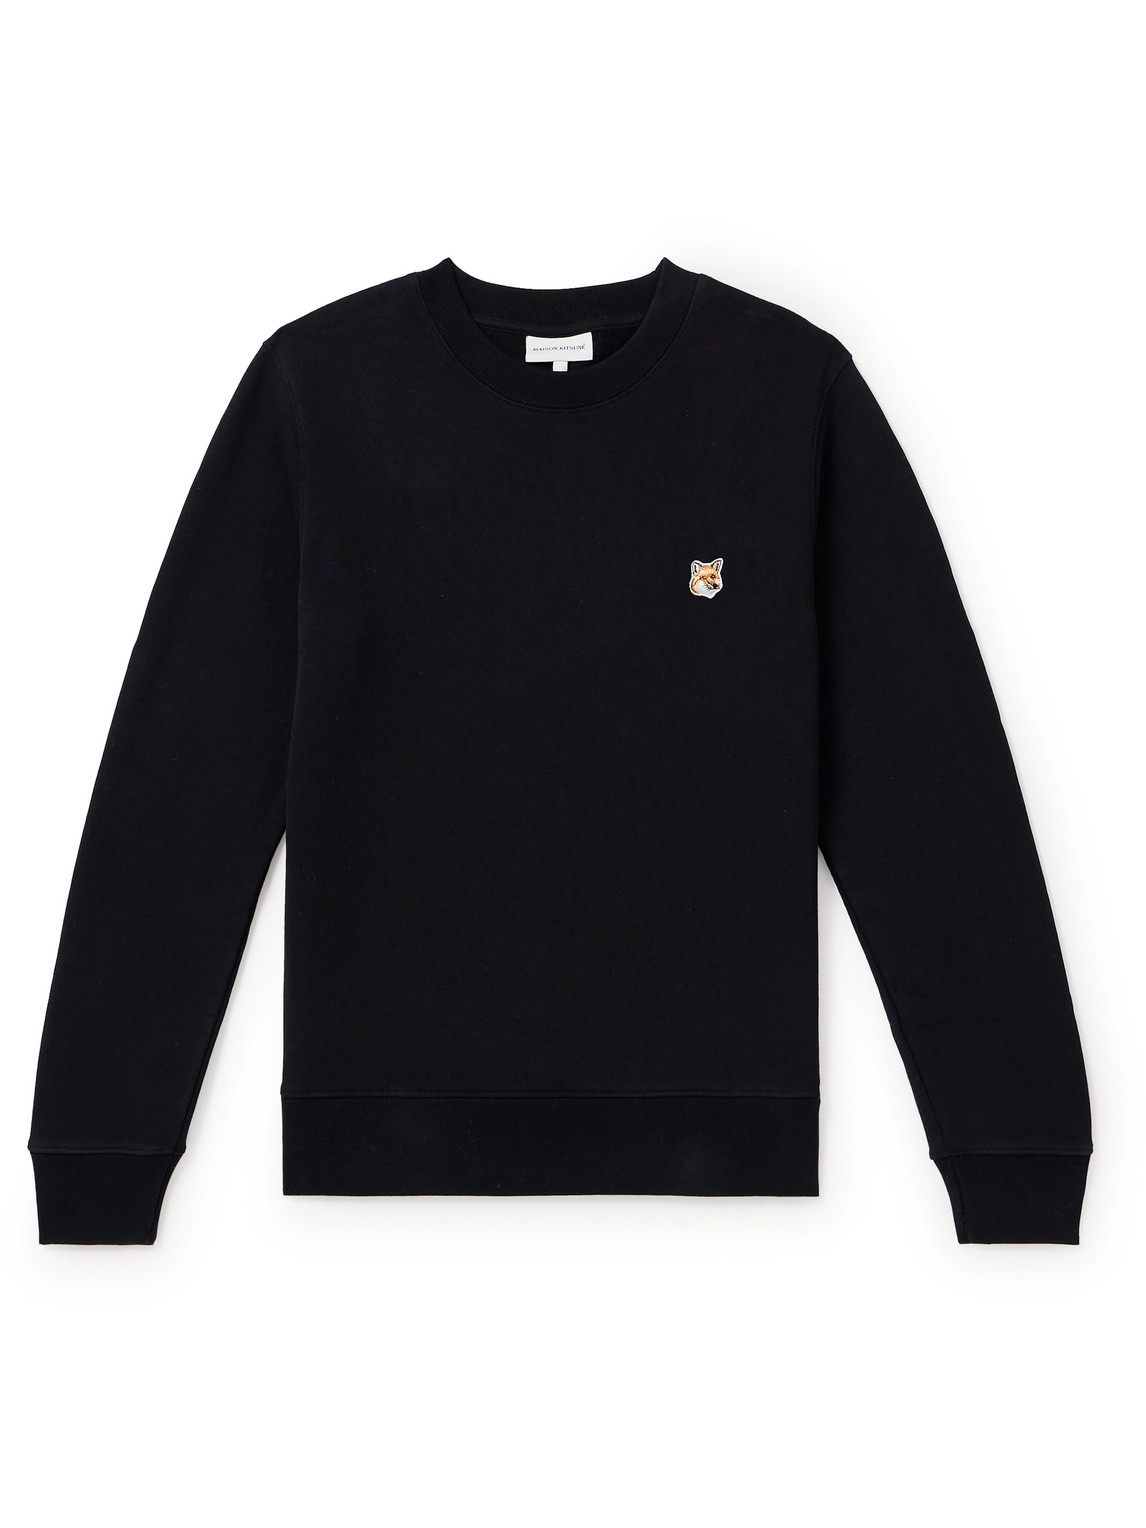 Maison Kitsuné - Logo-Appliquéd Cotton-Jersey Sweatshirt - Men - Black - S von Maison Kitsuné